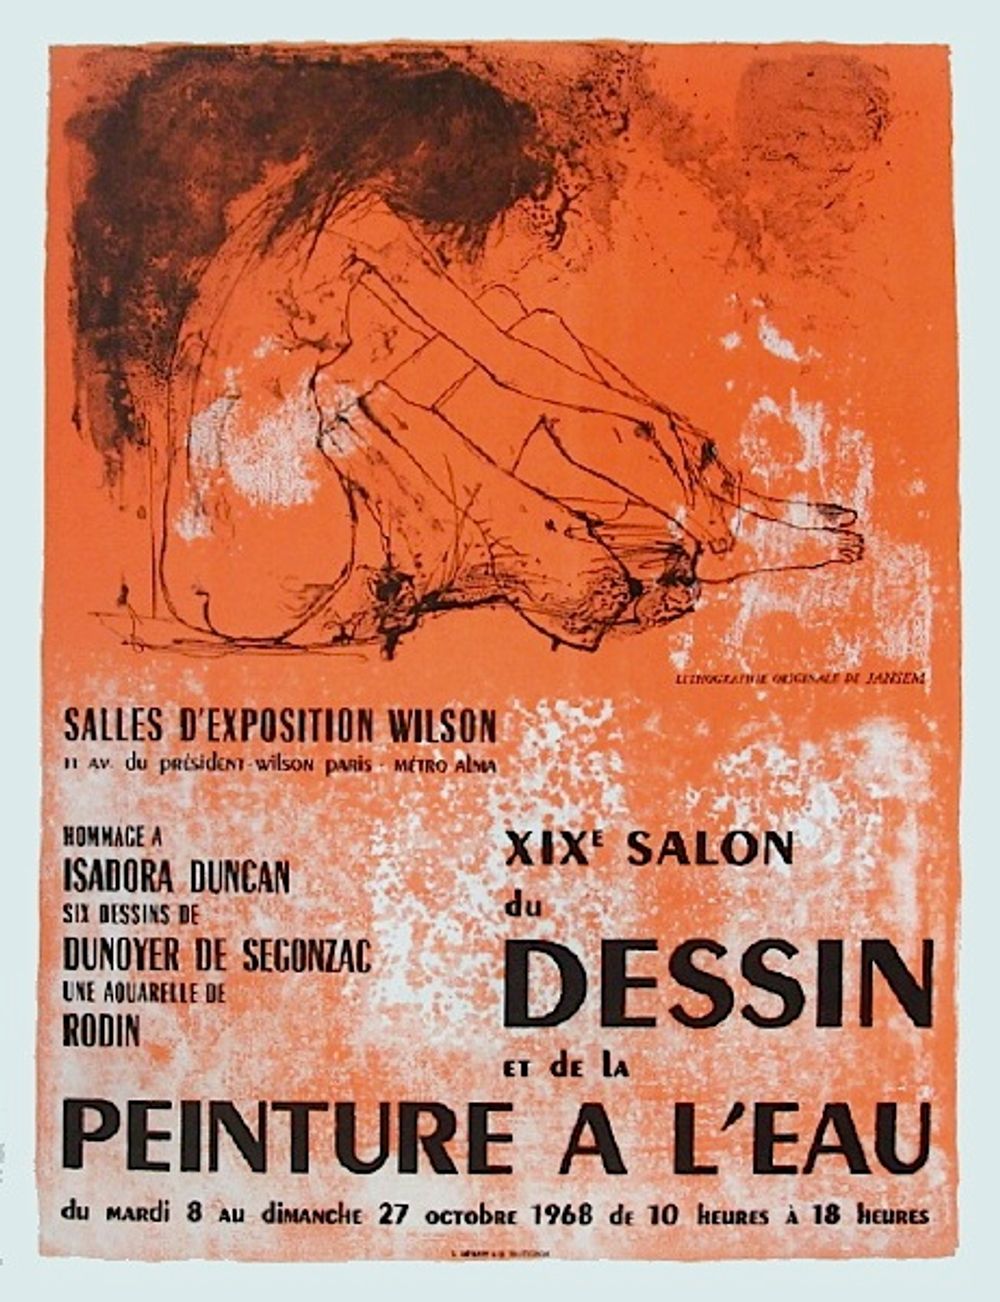 Expo 68 - Salon du Dessin et de la peinture à l'eau